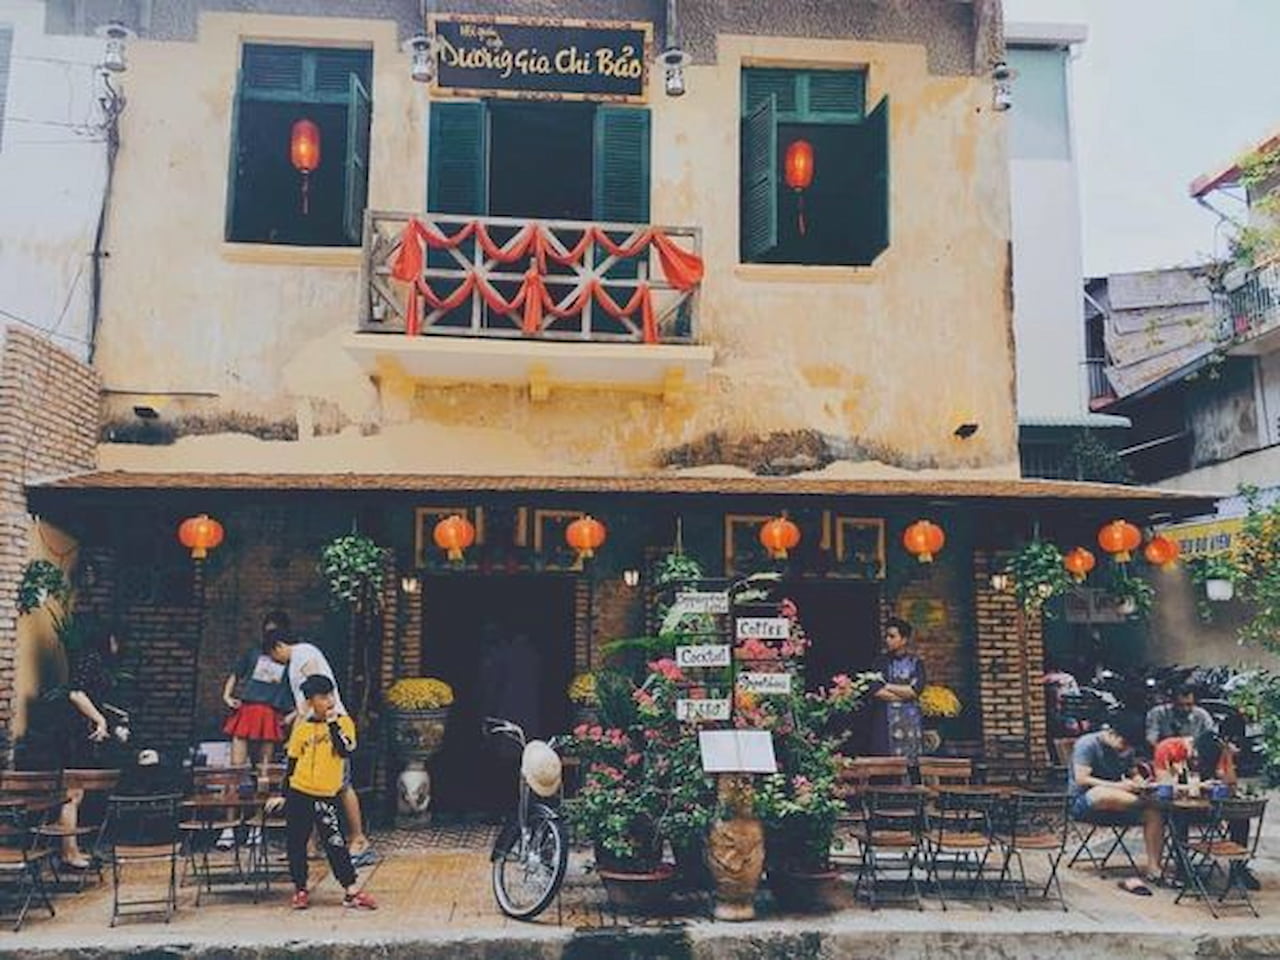 Quán cafe đẹp ở Cần Thơ - Cafe Dương Gia Chi Bảo 